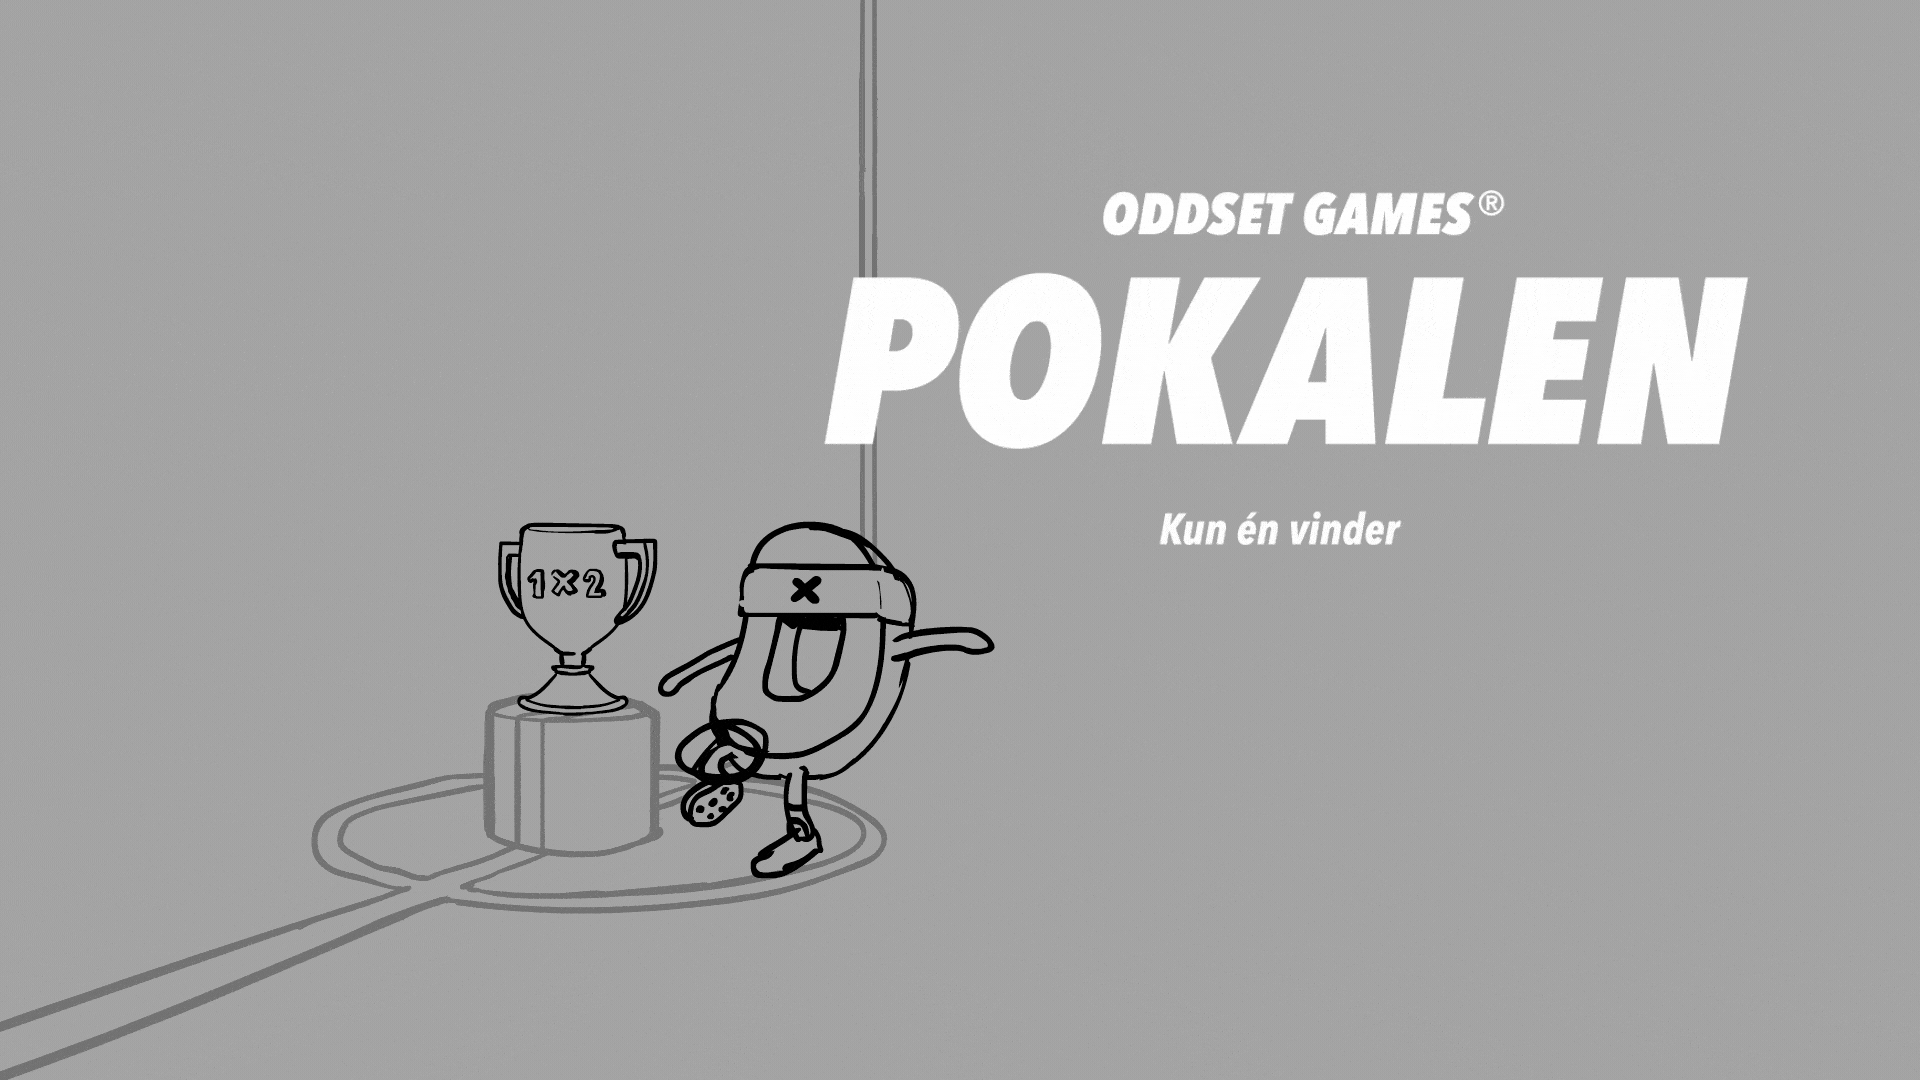 Oddset_Games_Pokalen_animatic_16x9_v001